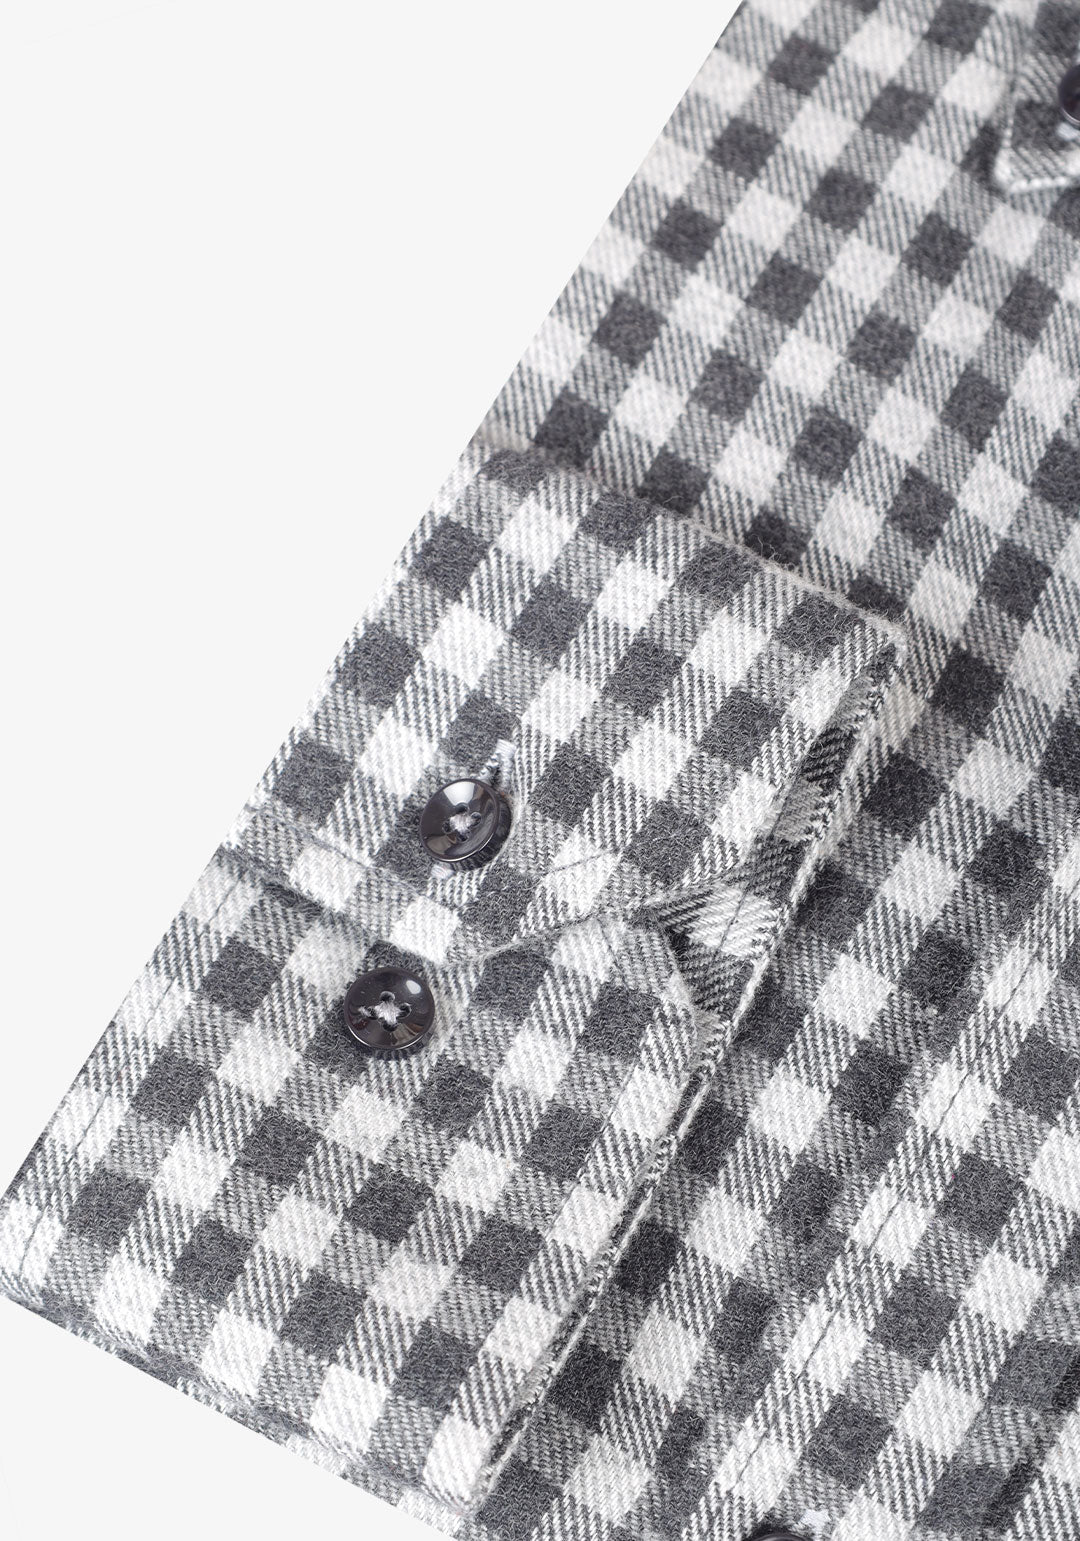 Checkered Long Sleeves Shirt